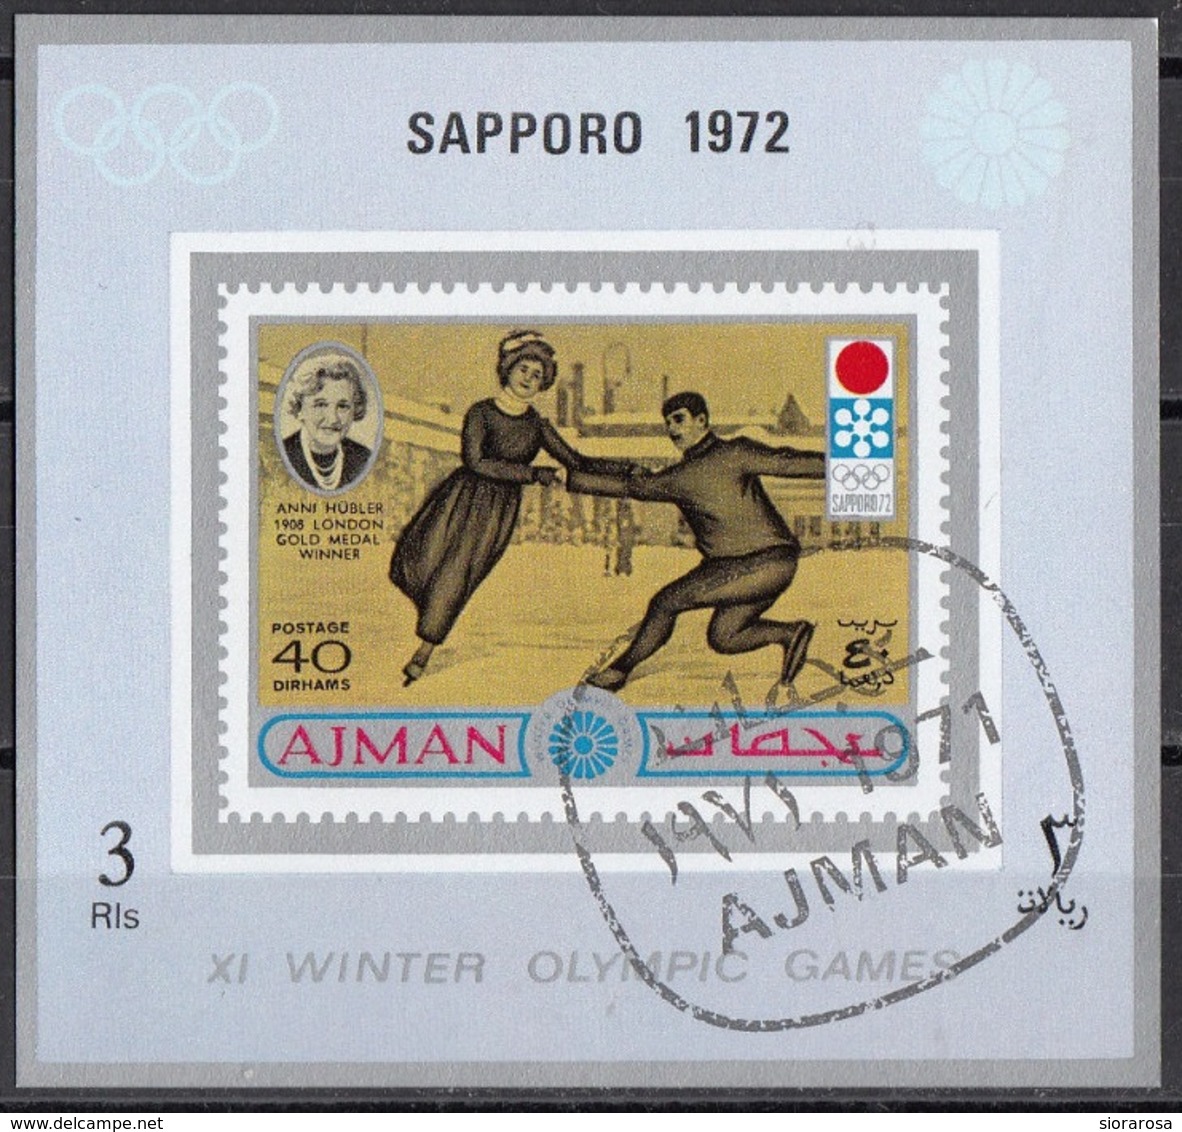 Ajman 1971 Mi. 763B Anna Hubler Oro Londra 1908 Pattinaggio (Sapporo '72) Sheet Nuovo CTO - Pattinaggio Artistico